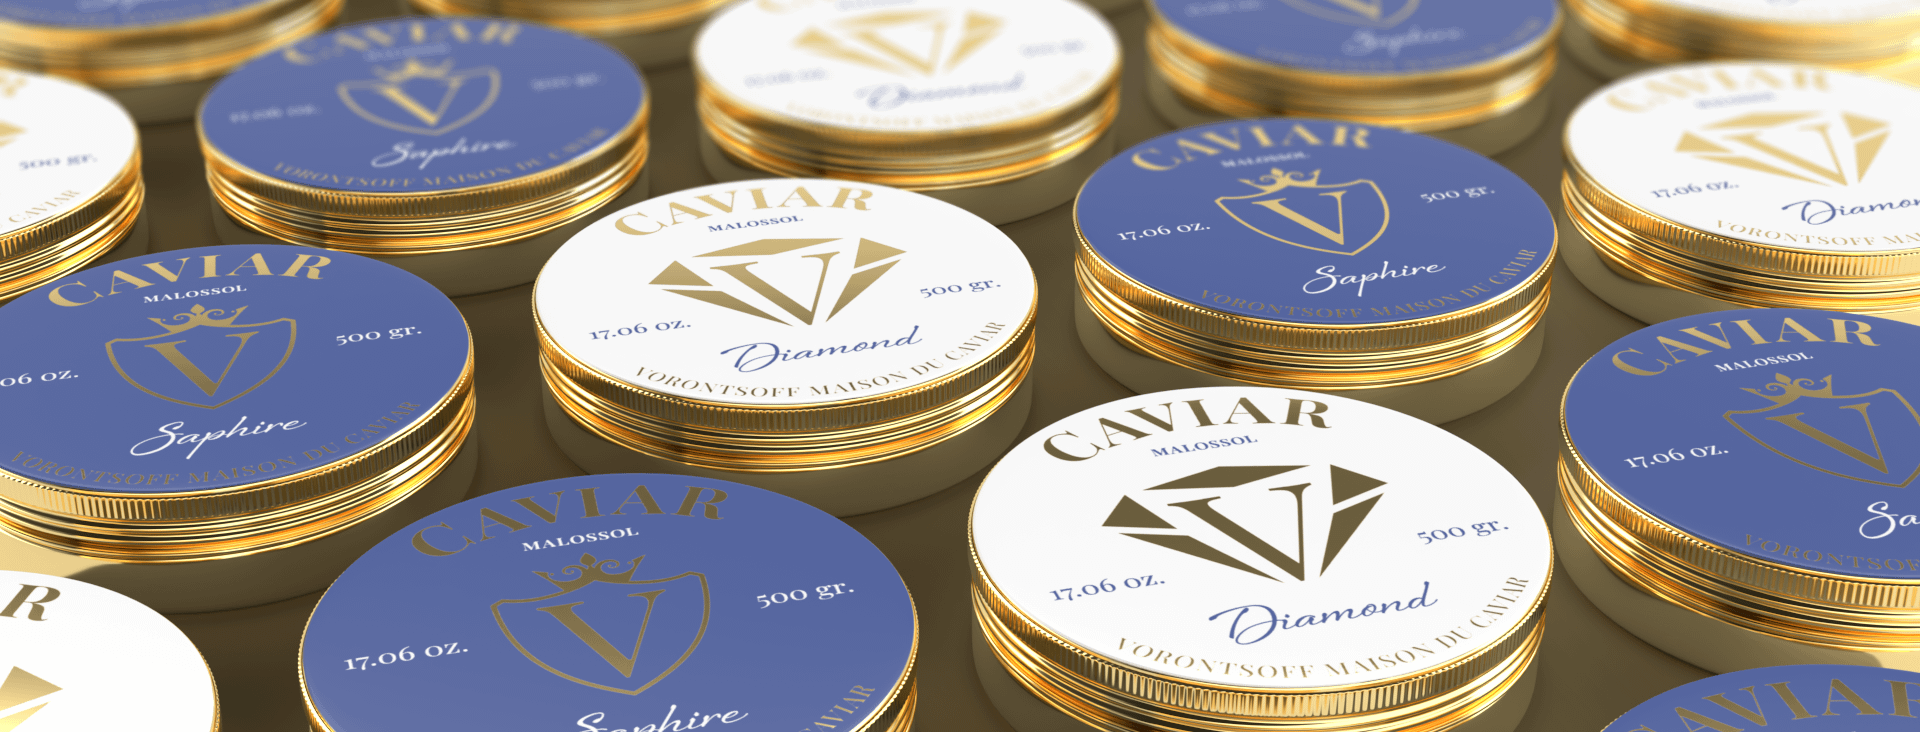 Vorontsoff: Package Design for Maison Du Caviar.